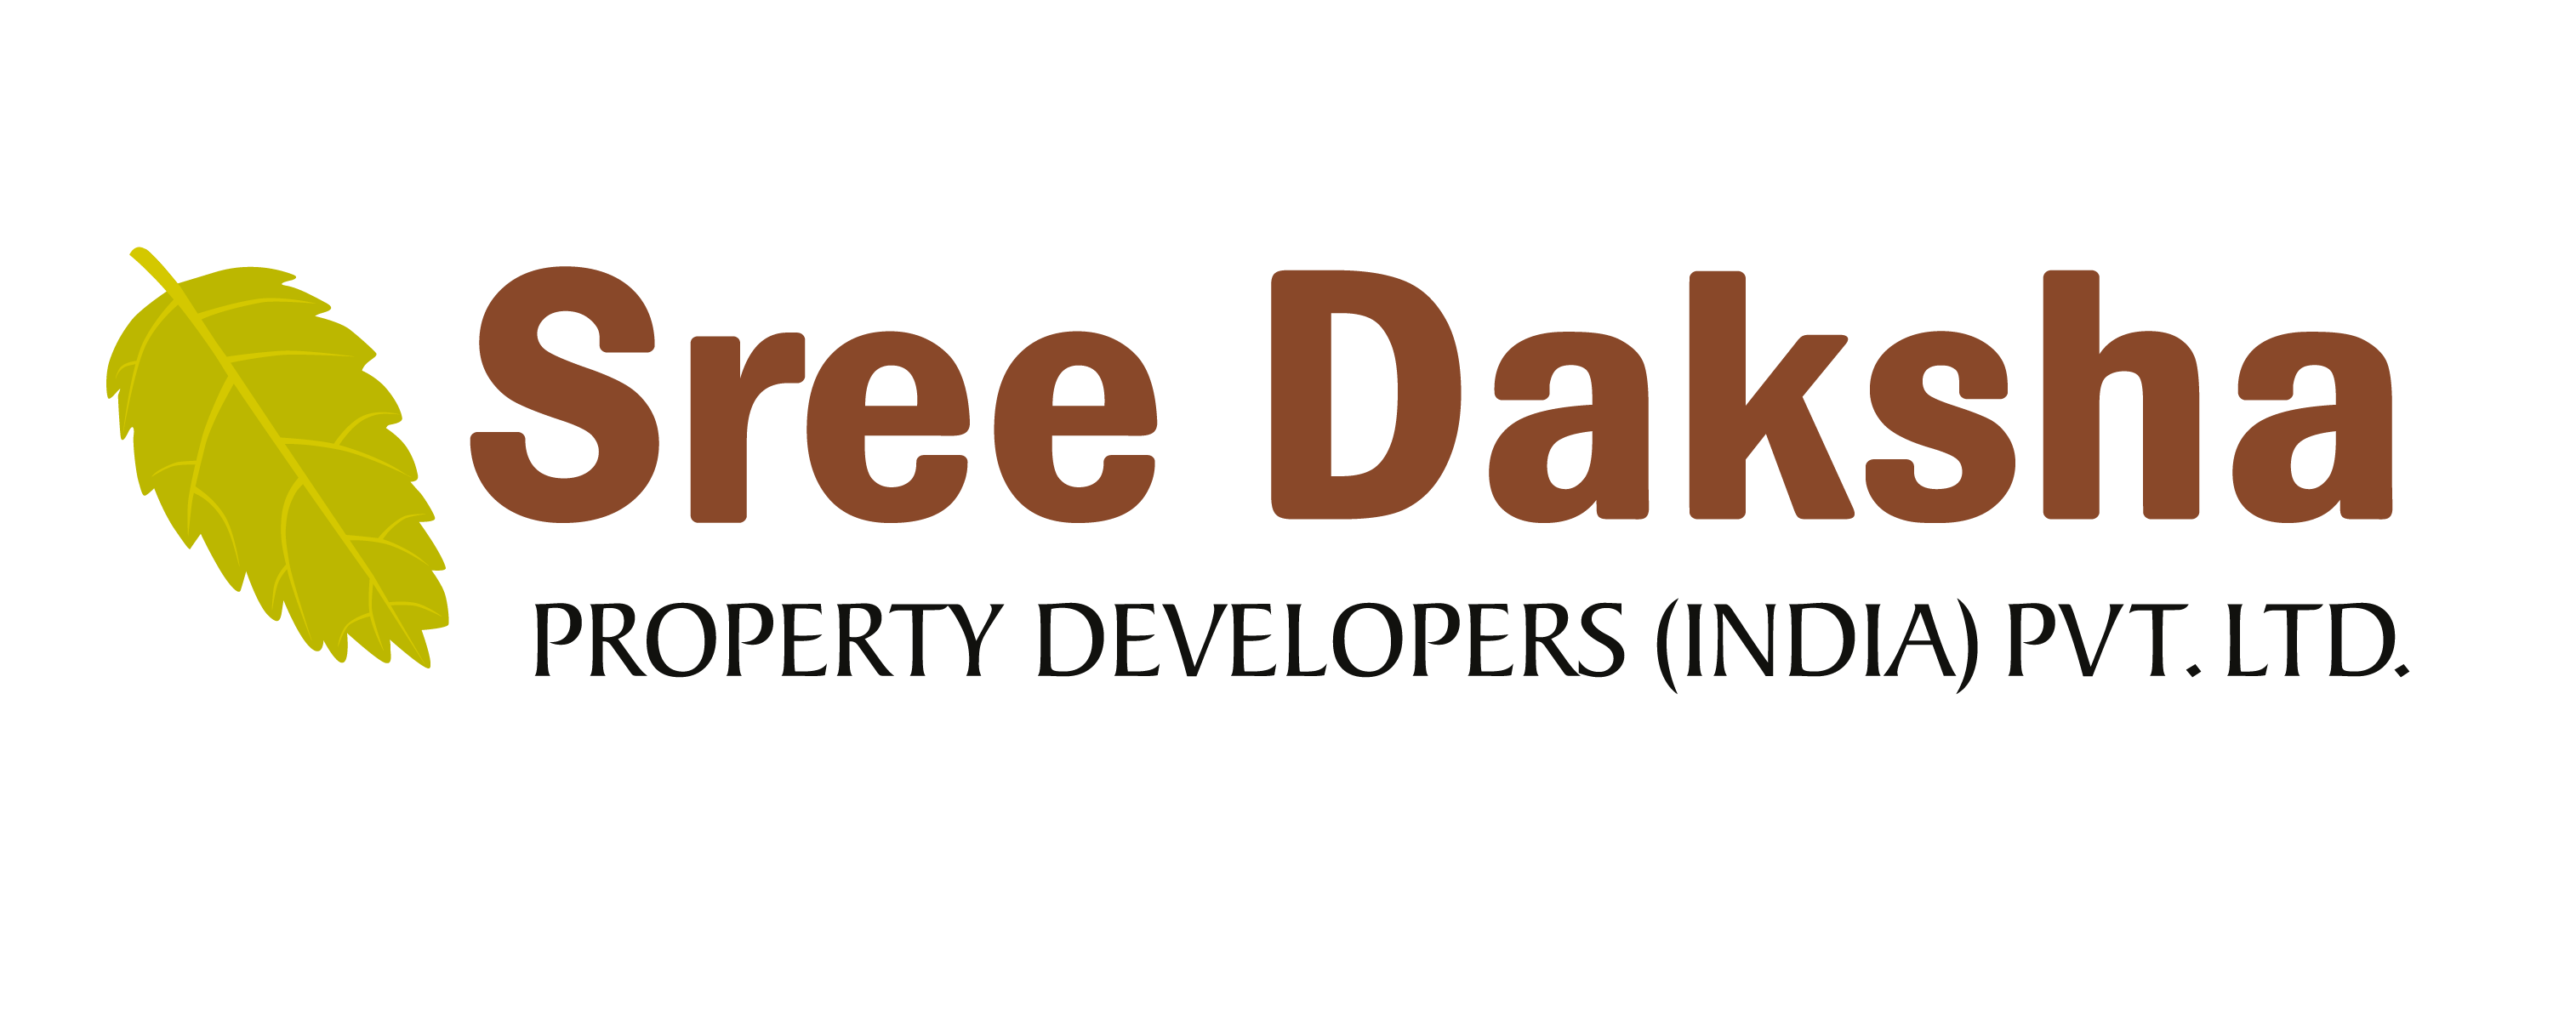 Daksh CCTV India Pvt Ltd profile at Startupxplore